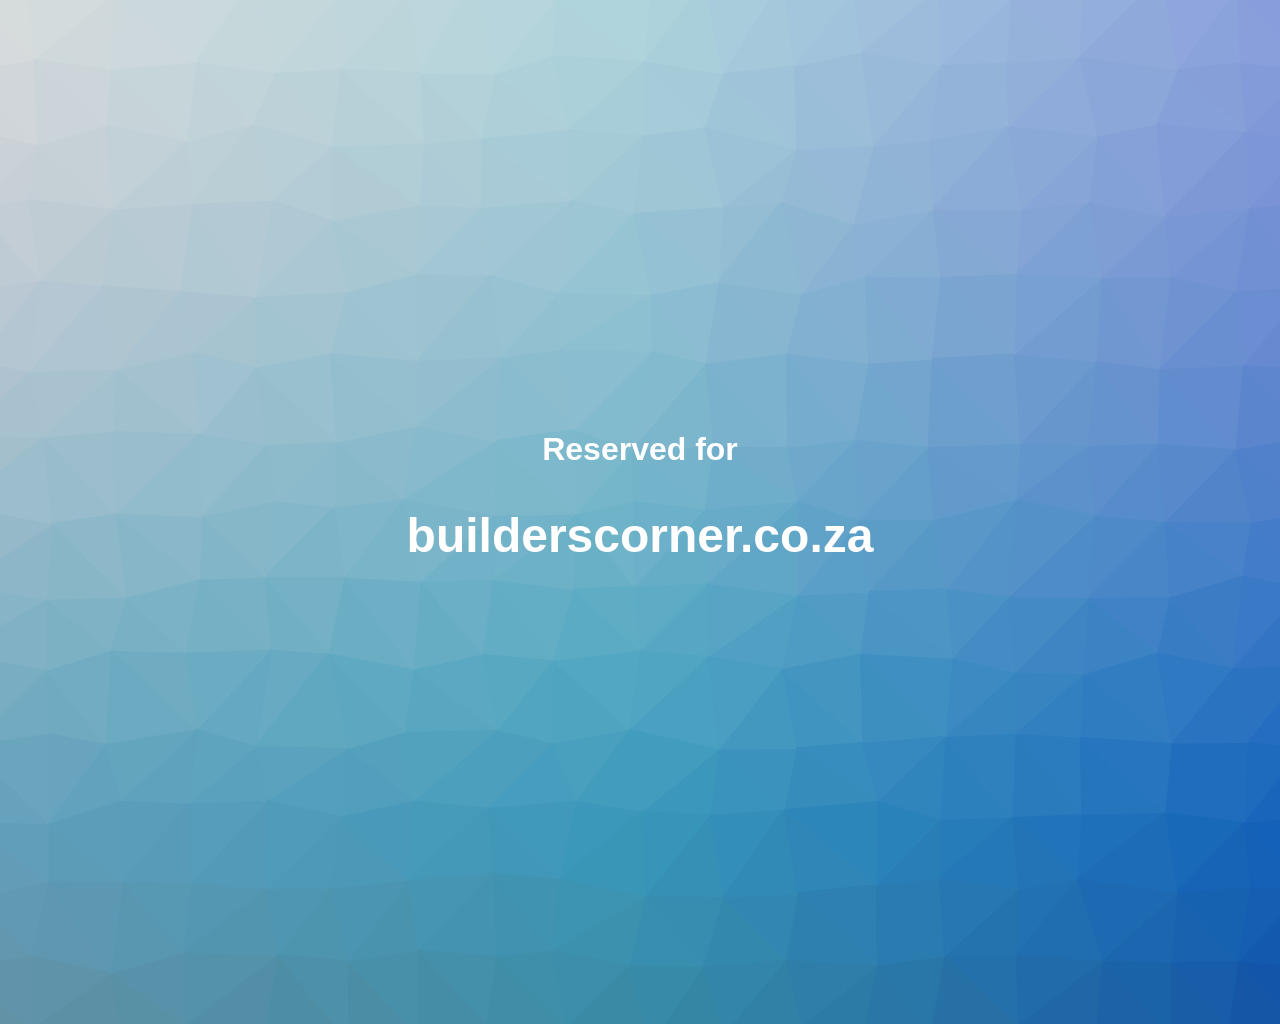 builderscorner.co.za